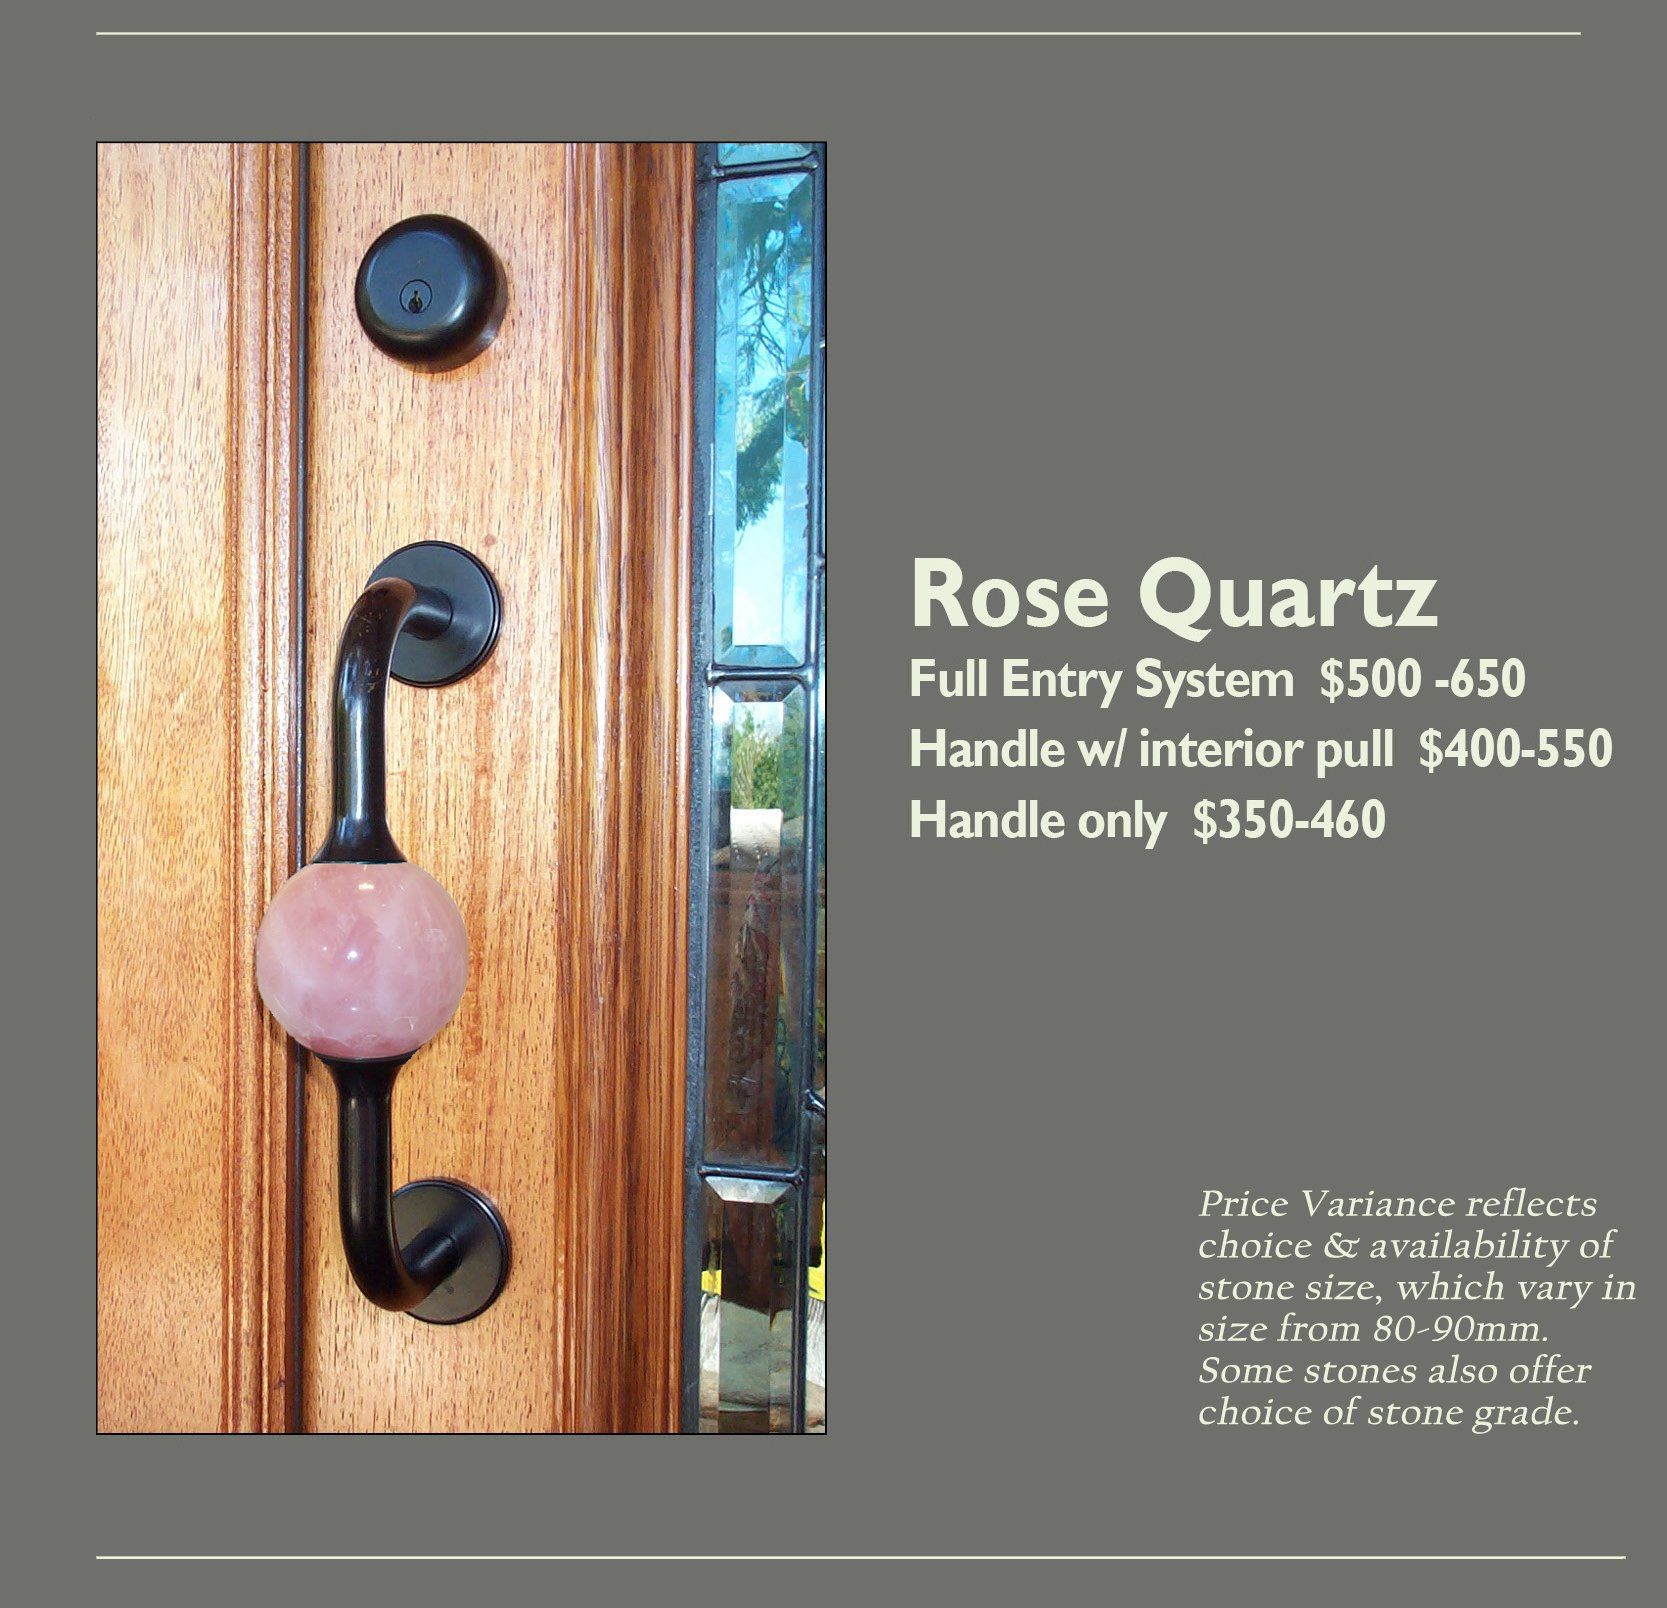 Rose Quartz Entry Knob Options